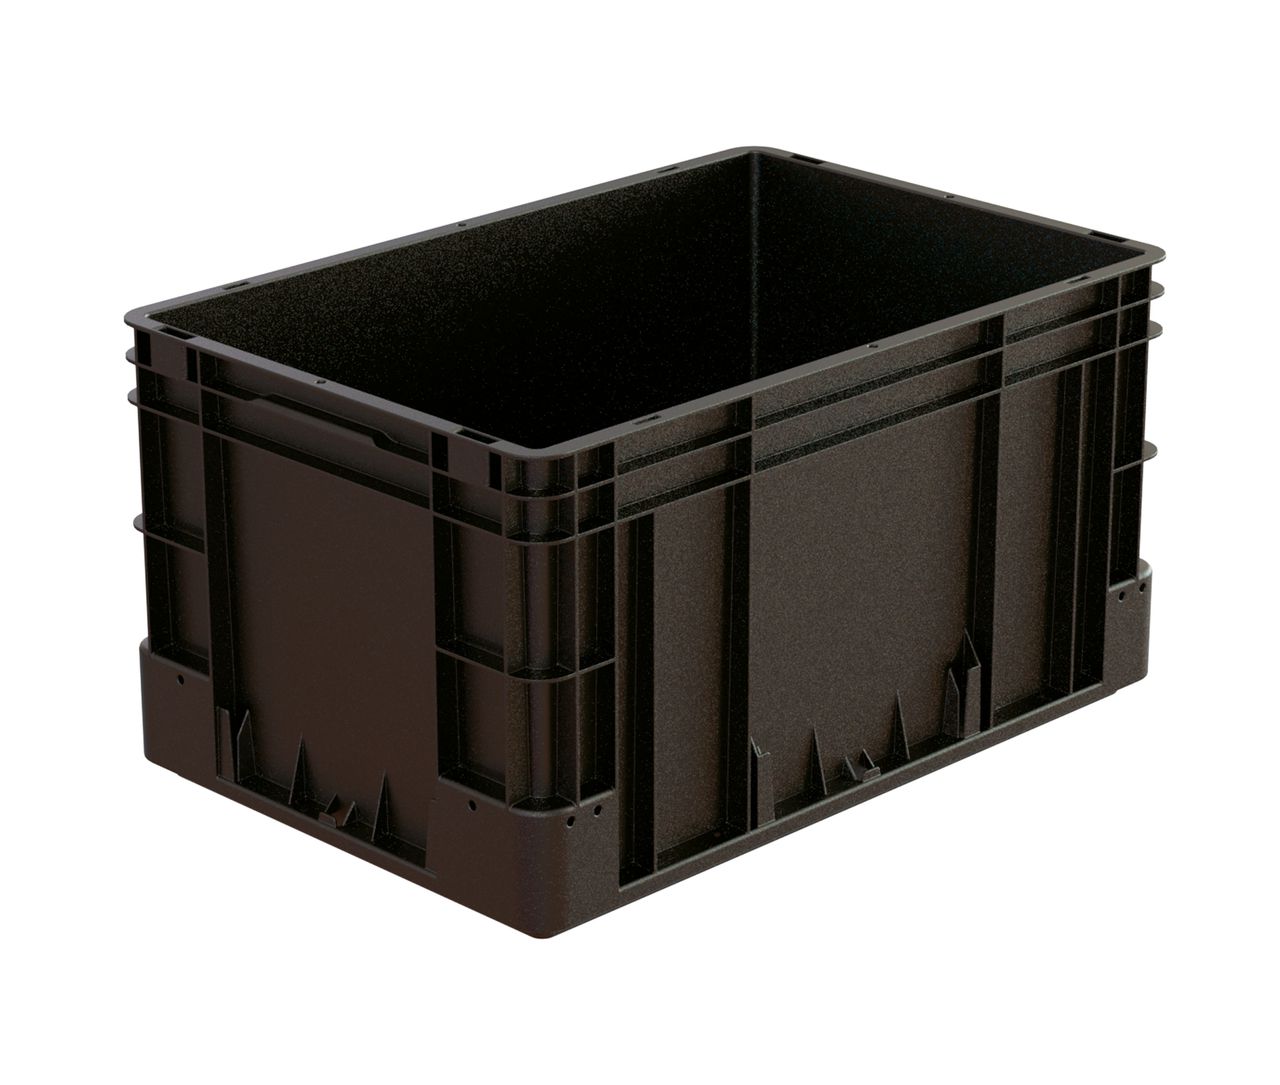 ESD-Behälter silverline 
600 x 400 x 320 mm  Farbe: schwarz